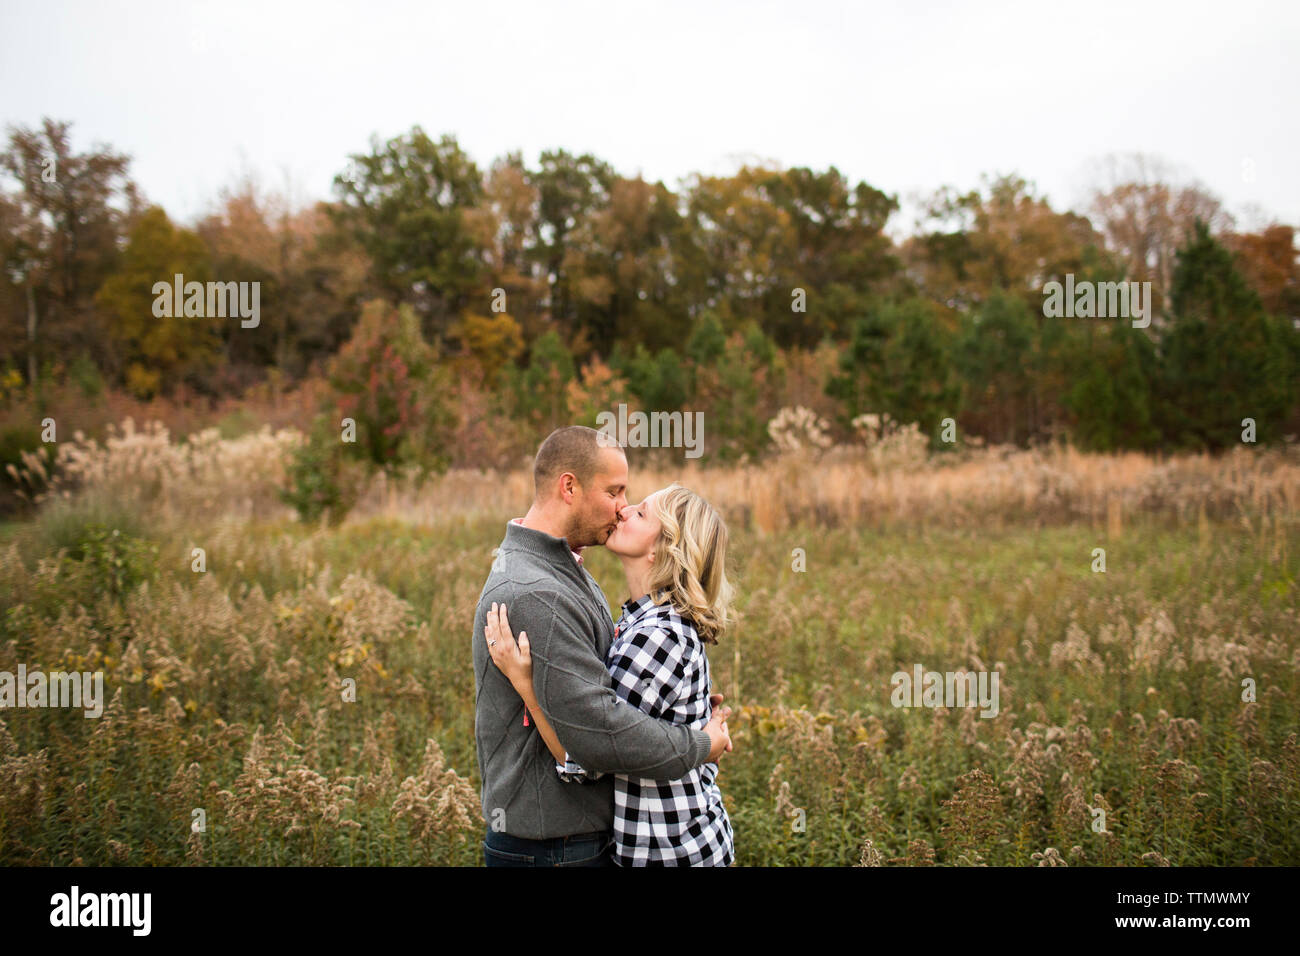 Vista laterale della coppia romantica baciare stando in piedi in mezzo a piante contro il cielo chiaro nella foresta Foto Stock